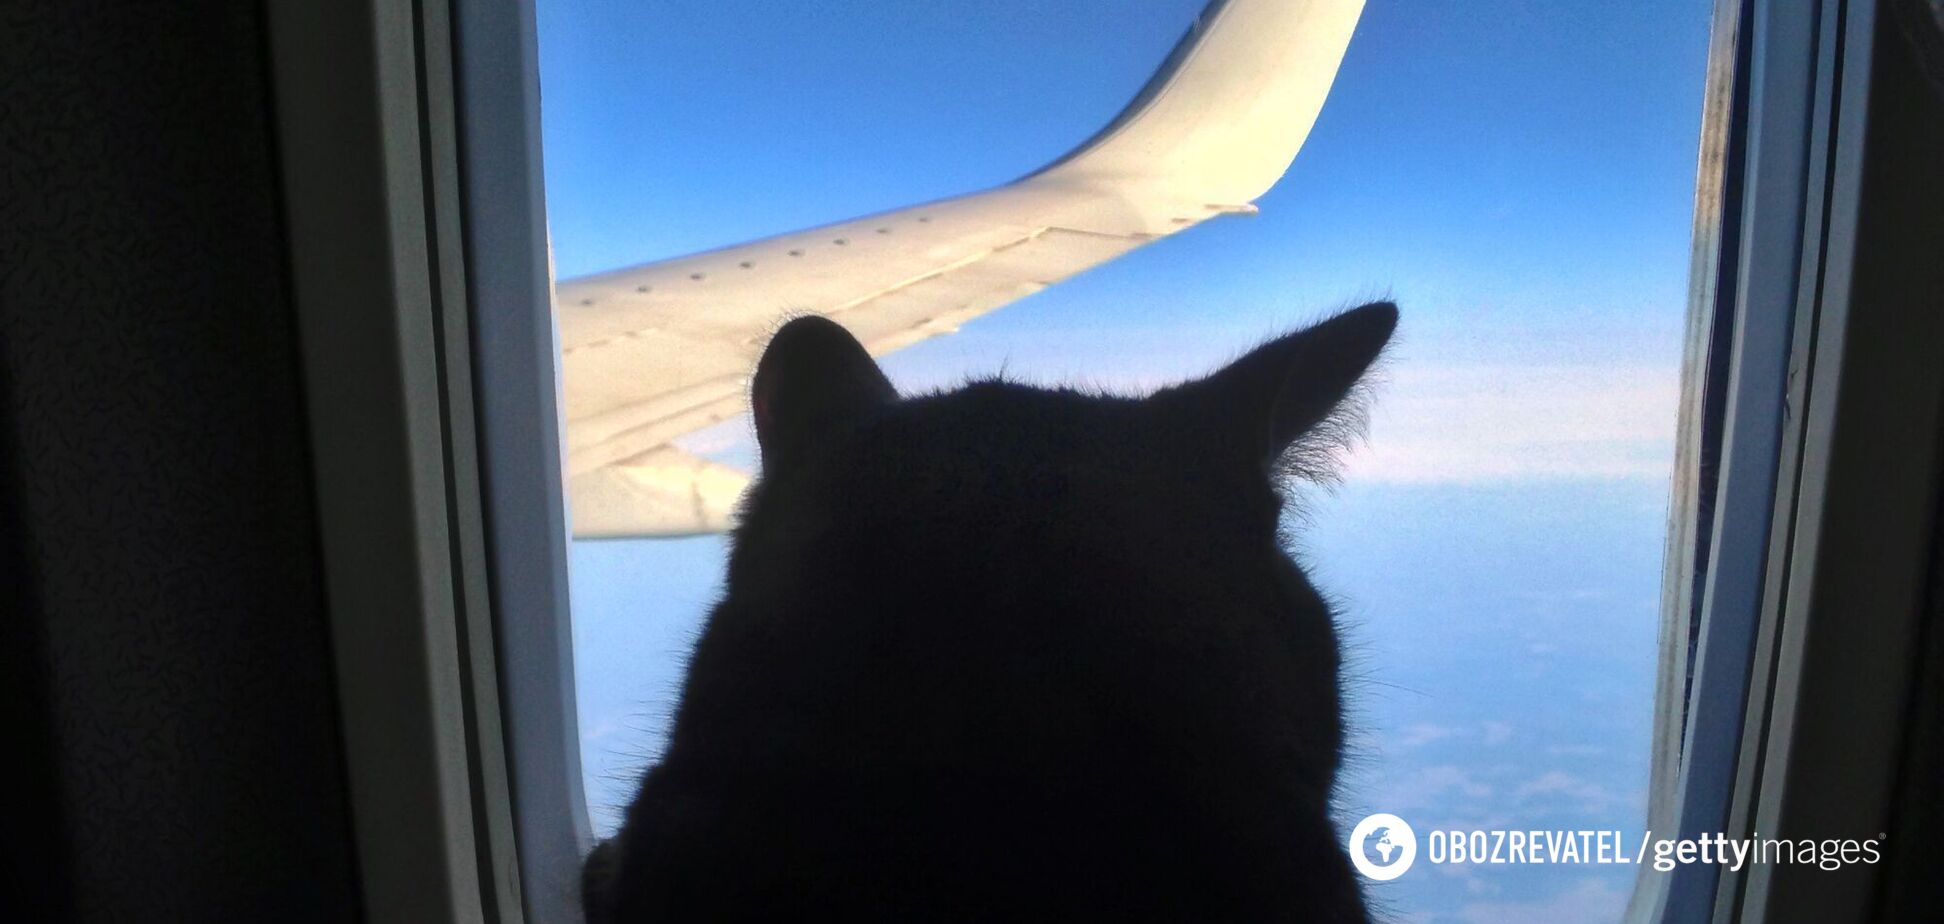 Відео з жінкою, яка годувала грудьми кота в літаку, наробило галасу, але виявилося постановкою